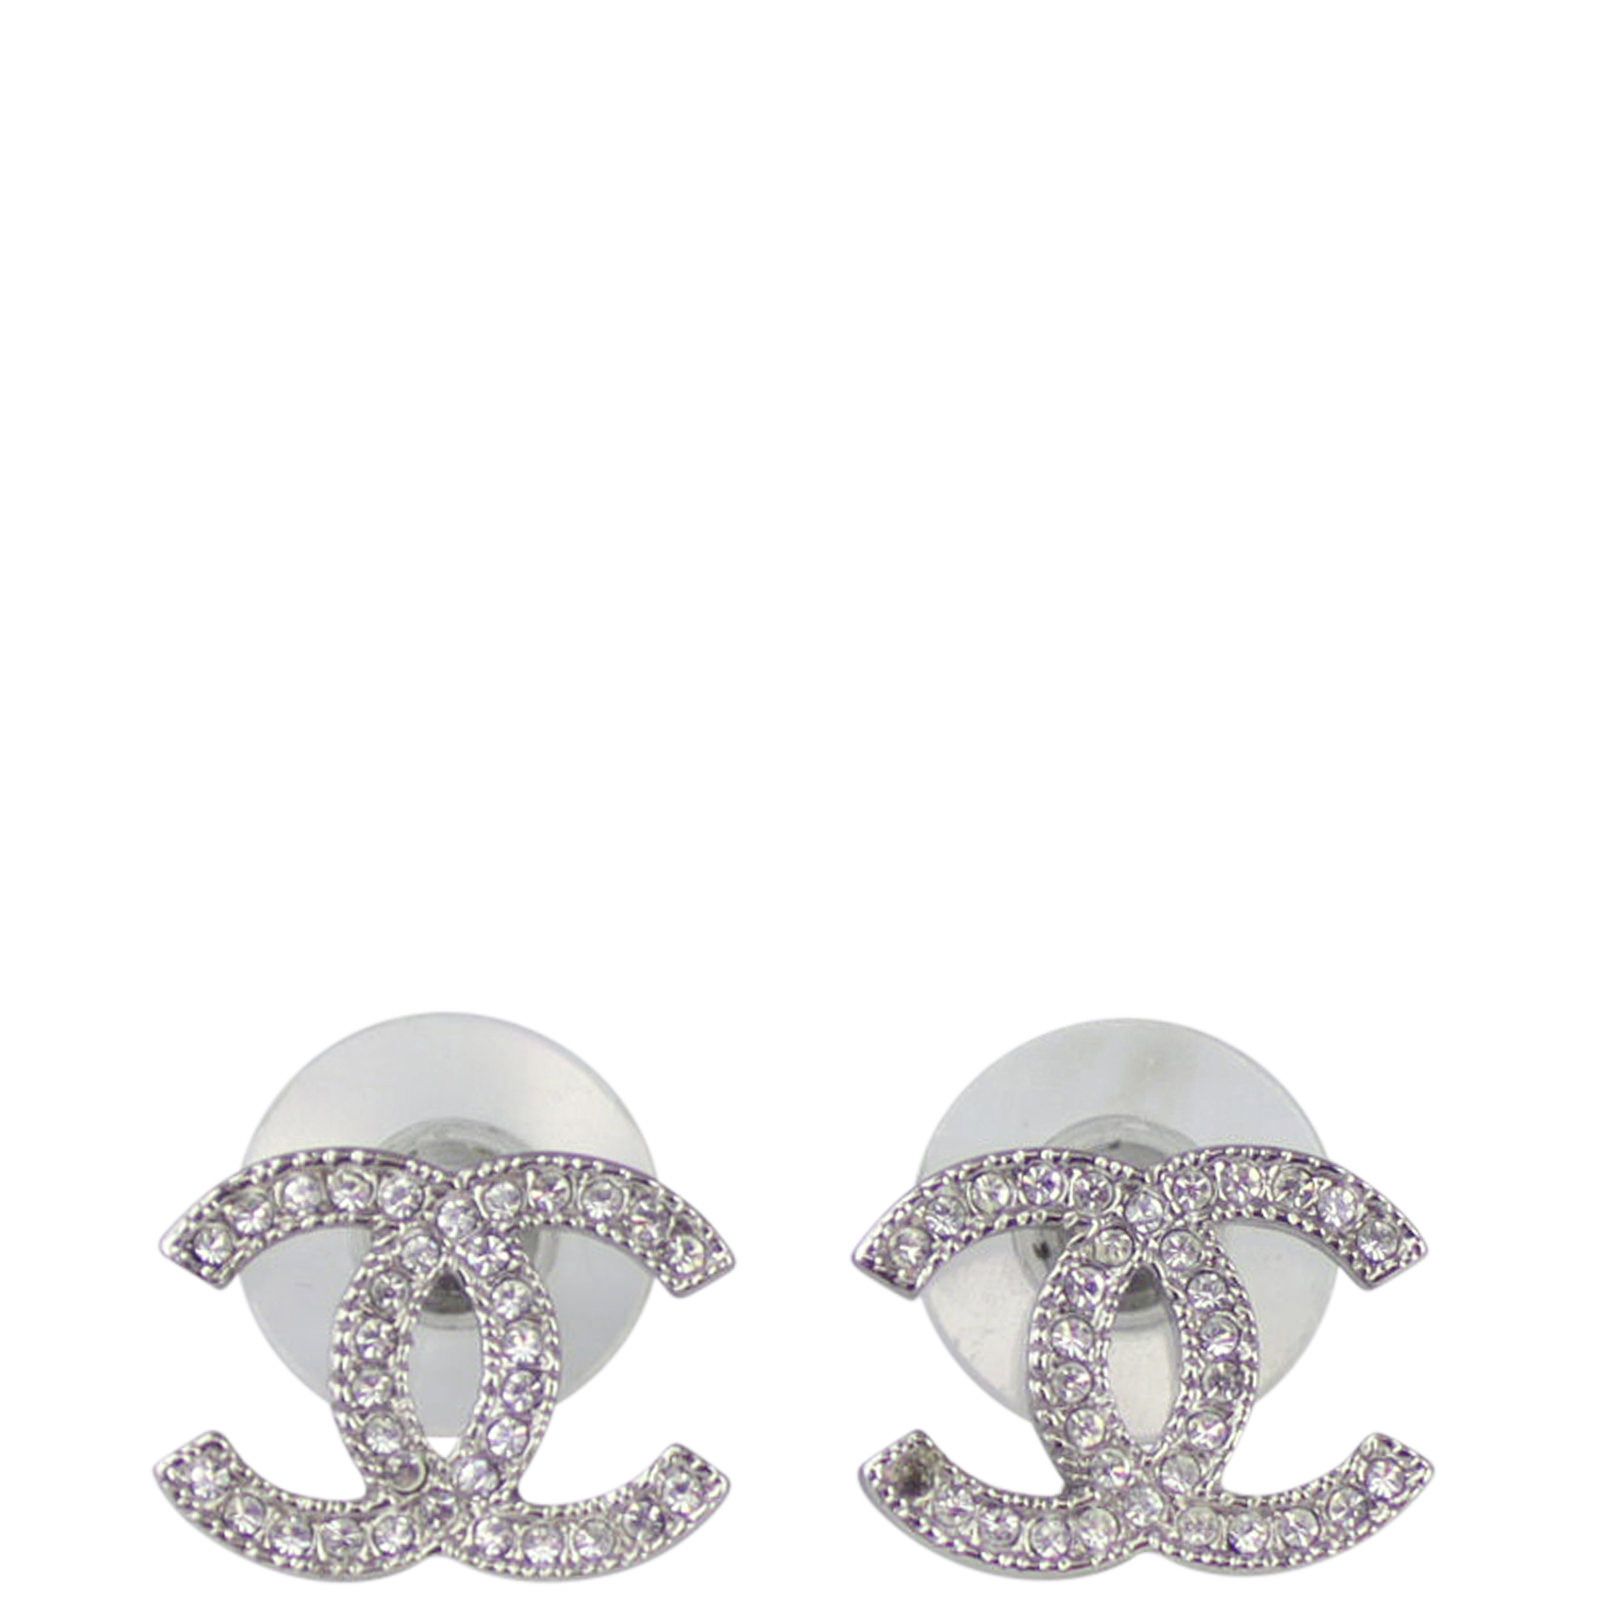 Basic Chanel Earrings Outlet  xevietnamcom 1687302950